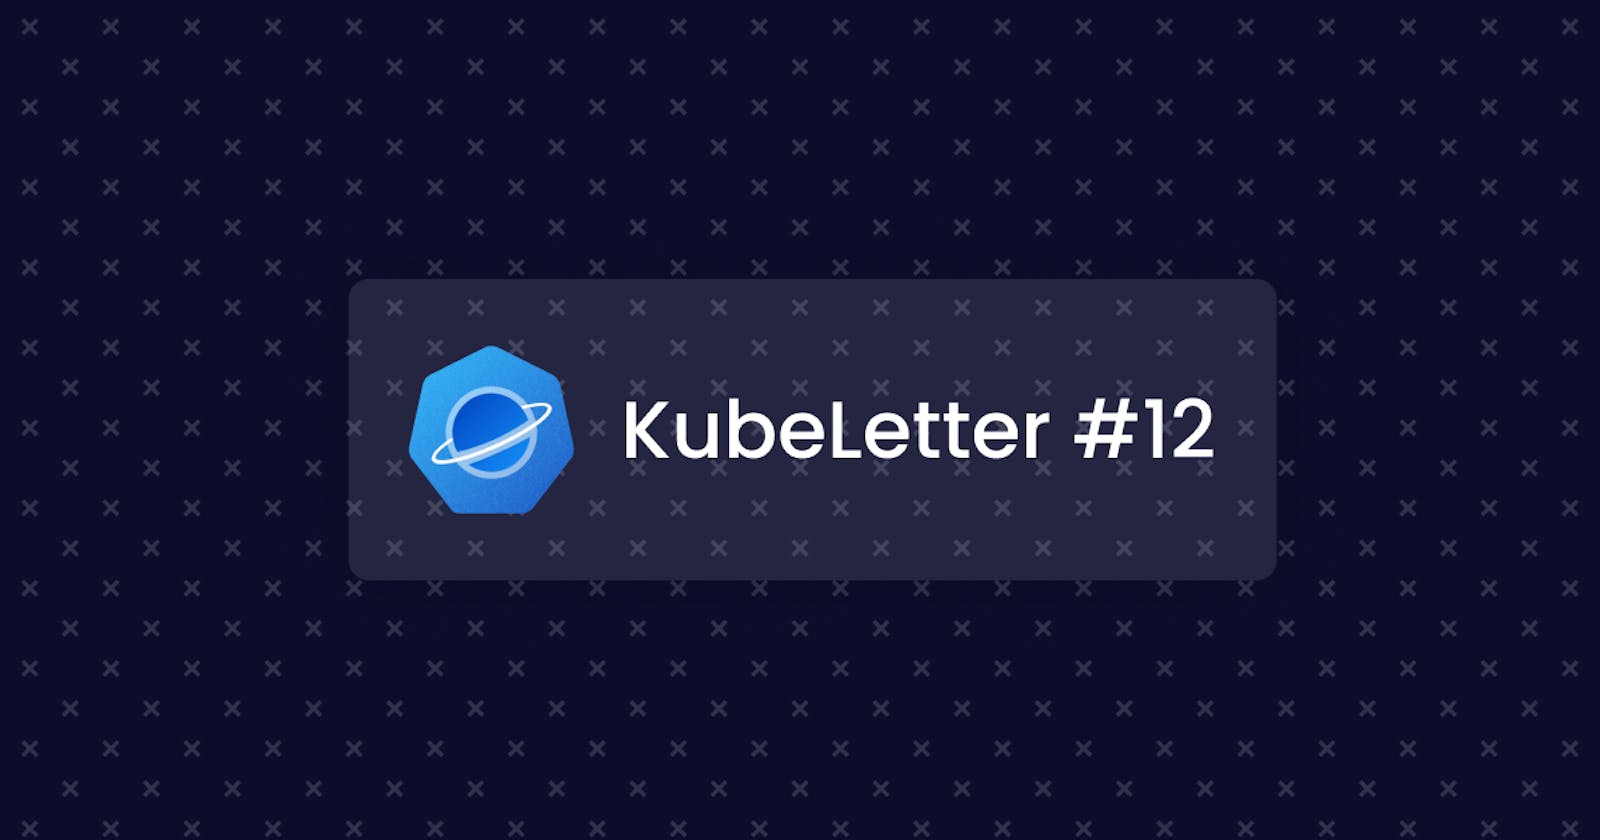 KubeLetter #12